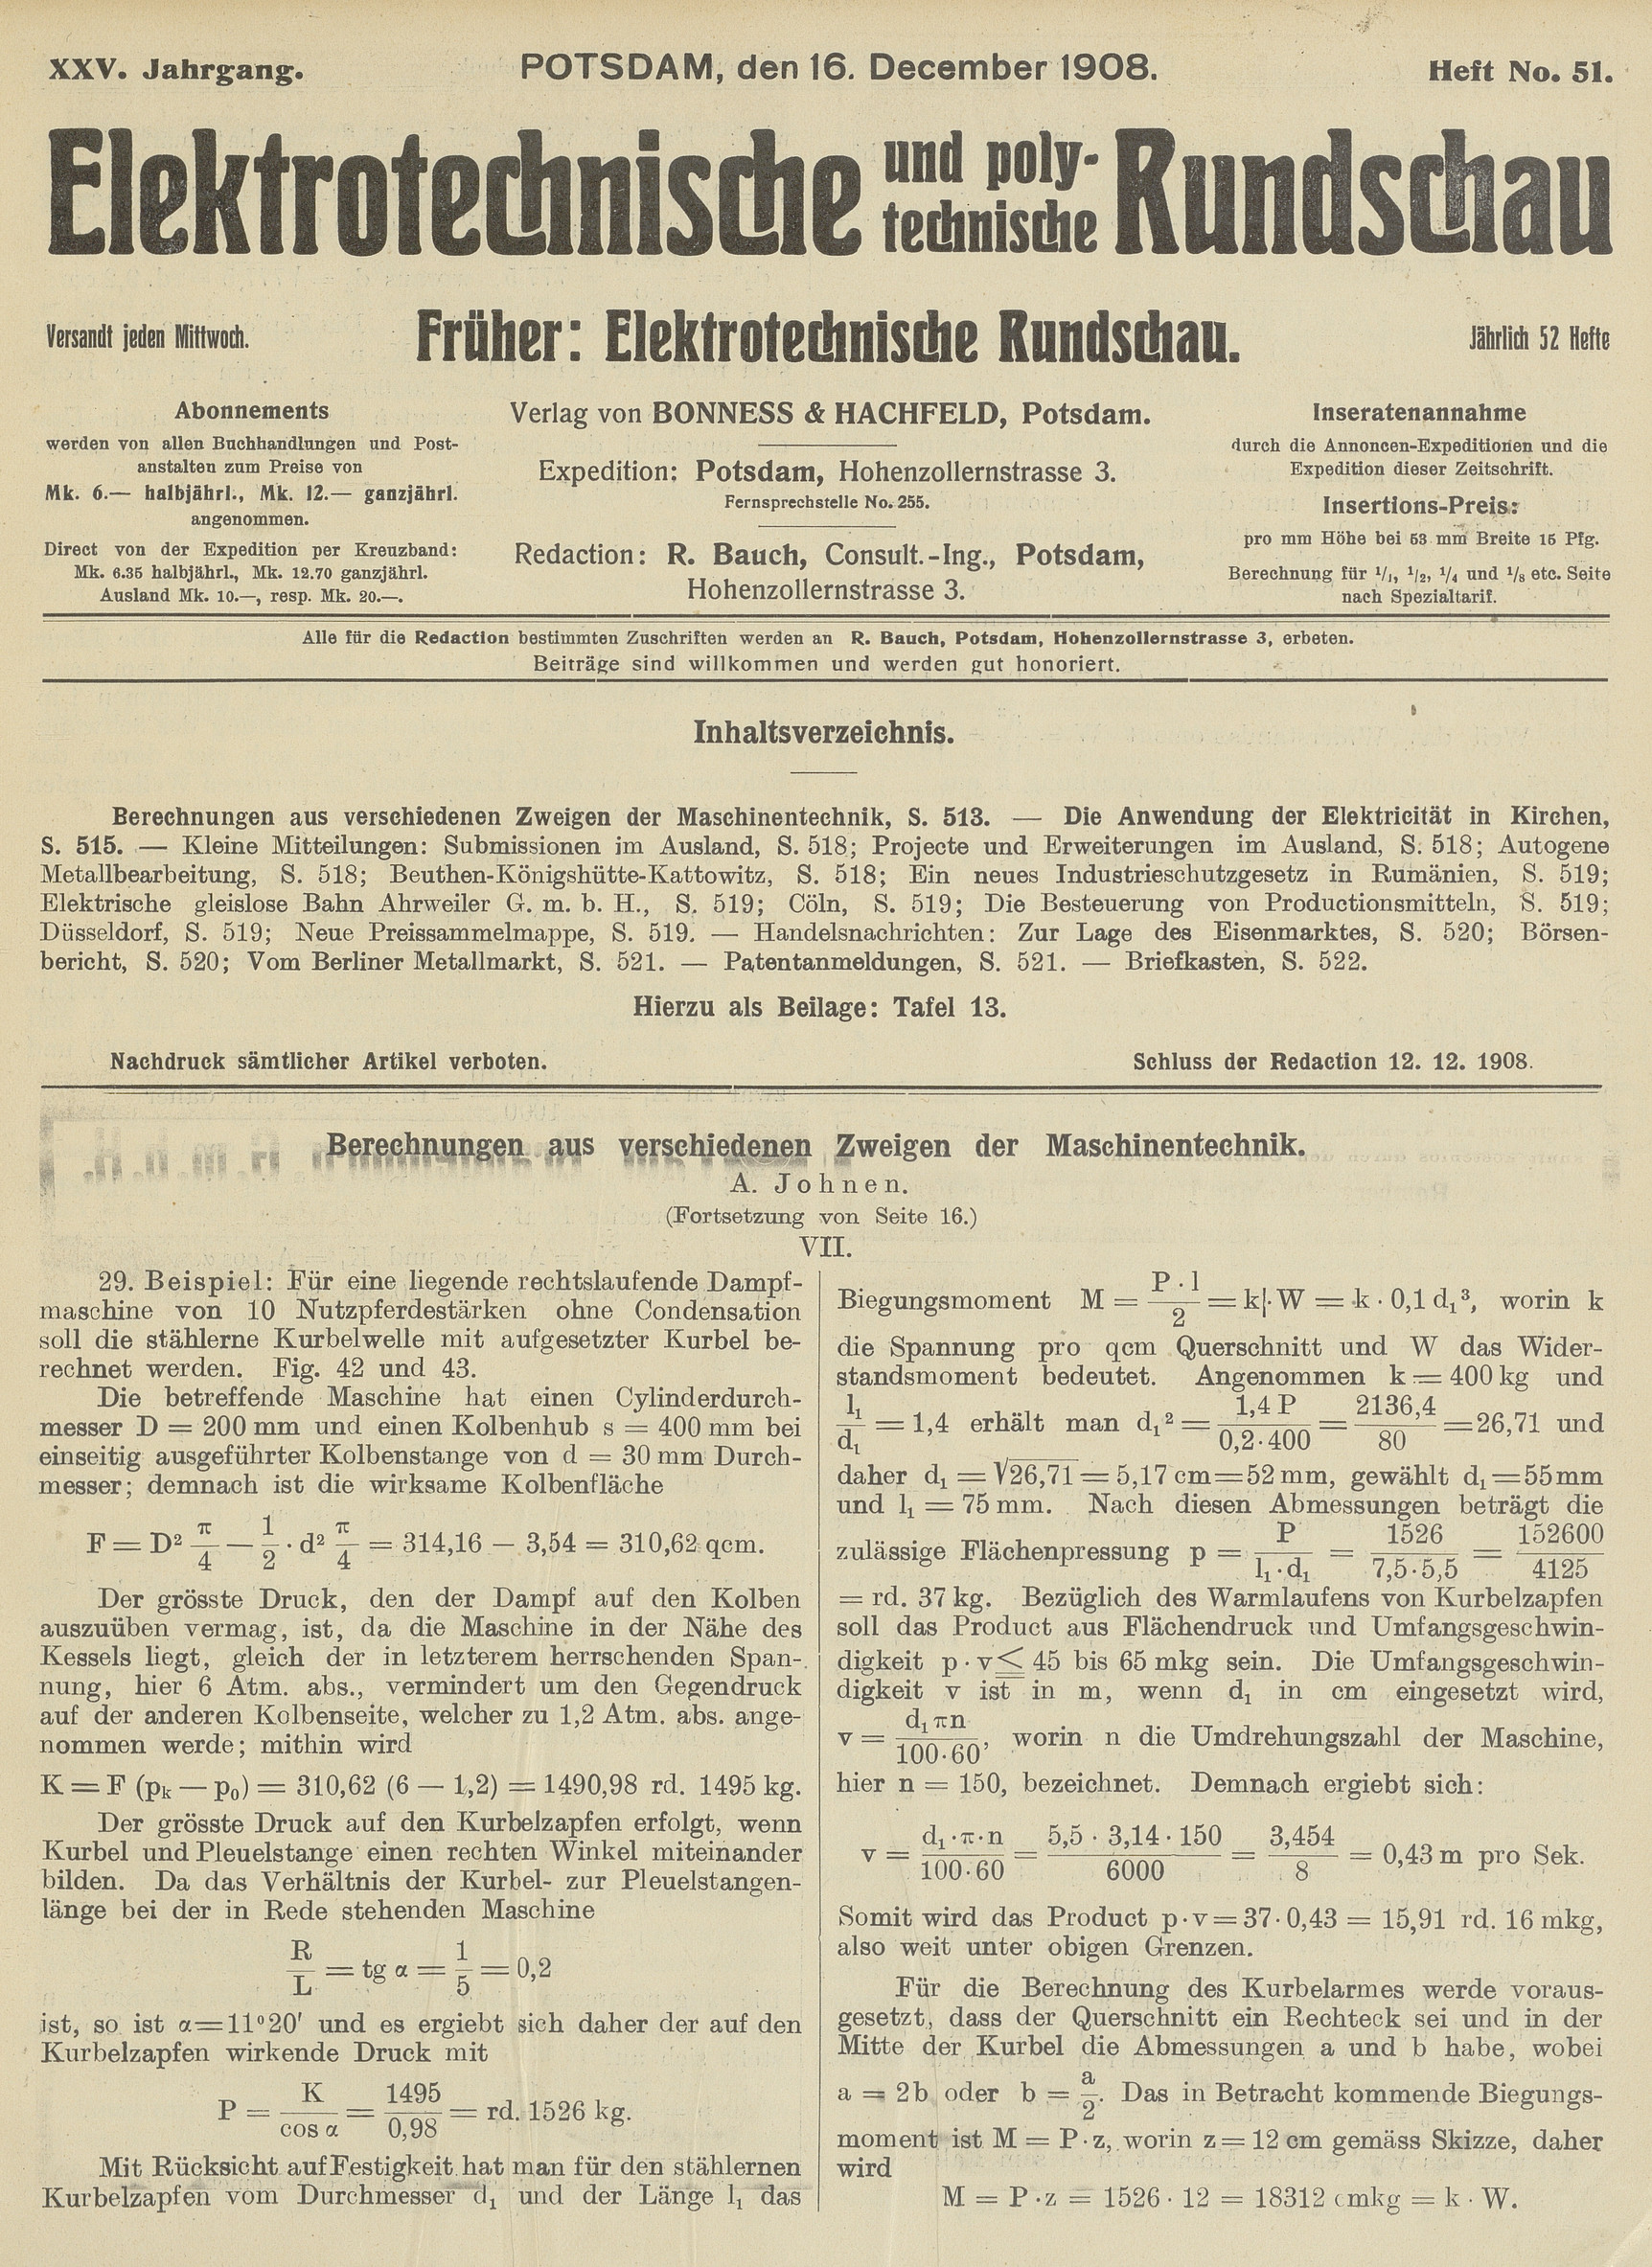 Elektrotechnische und polytechnische Rundschau, XXV. Jahrgang, Heft No. 51